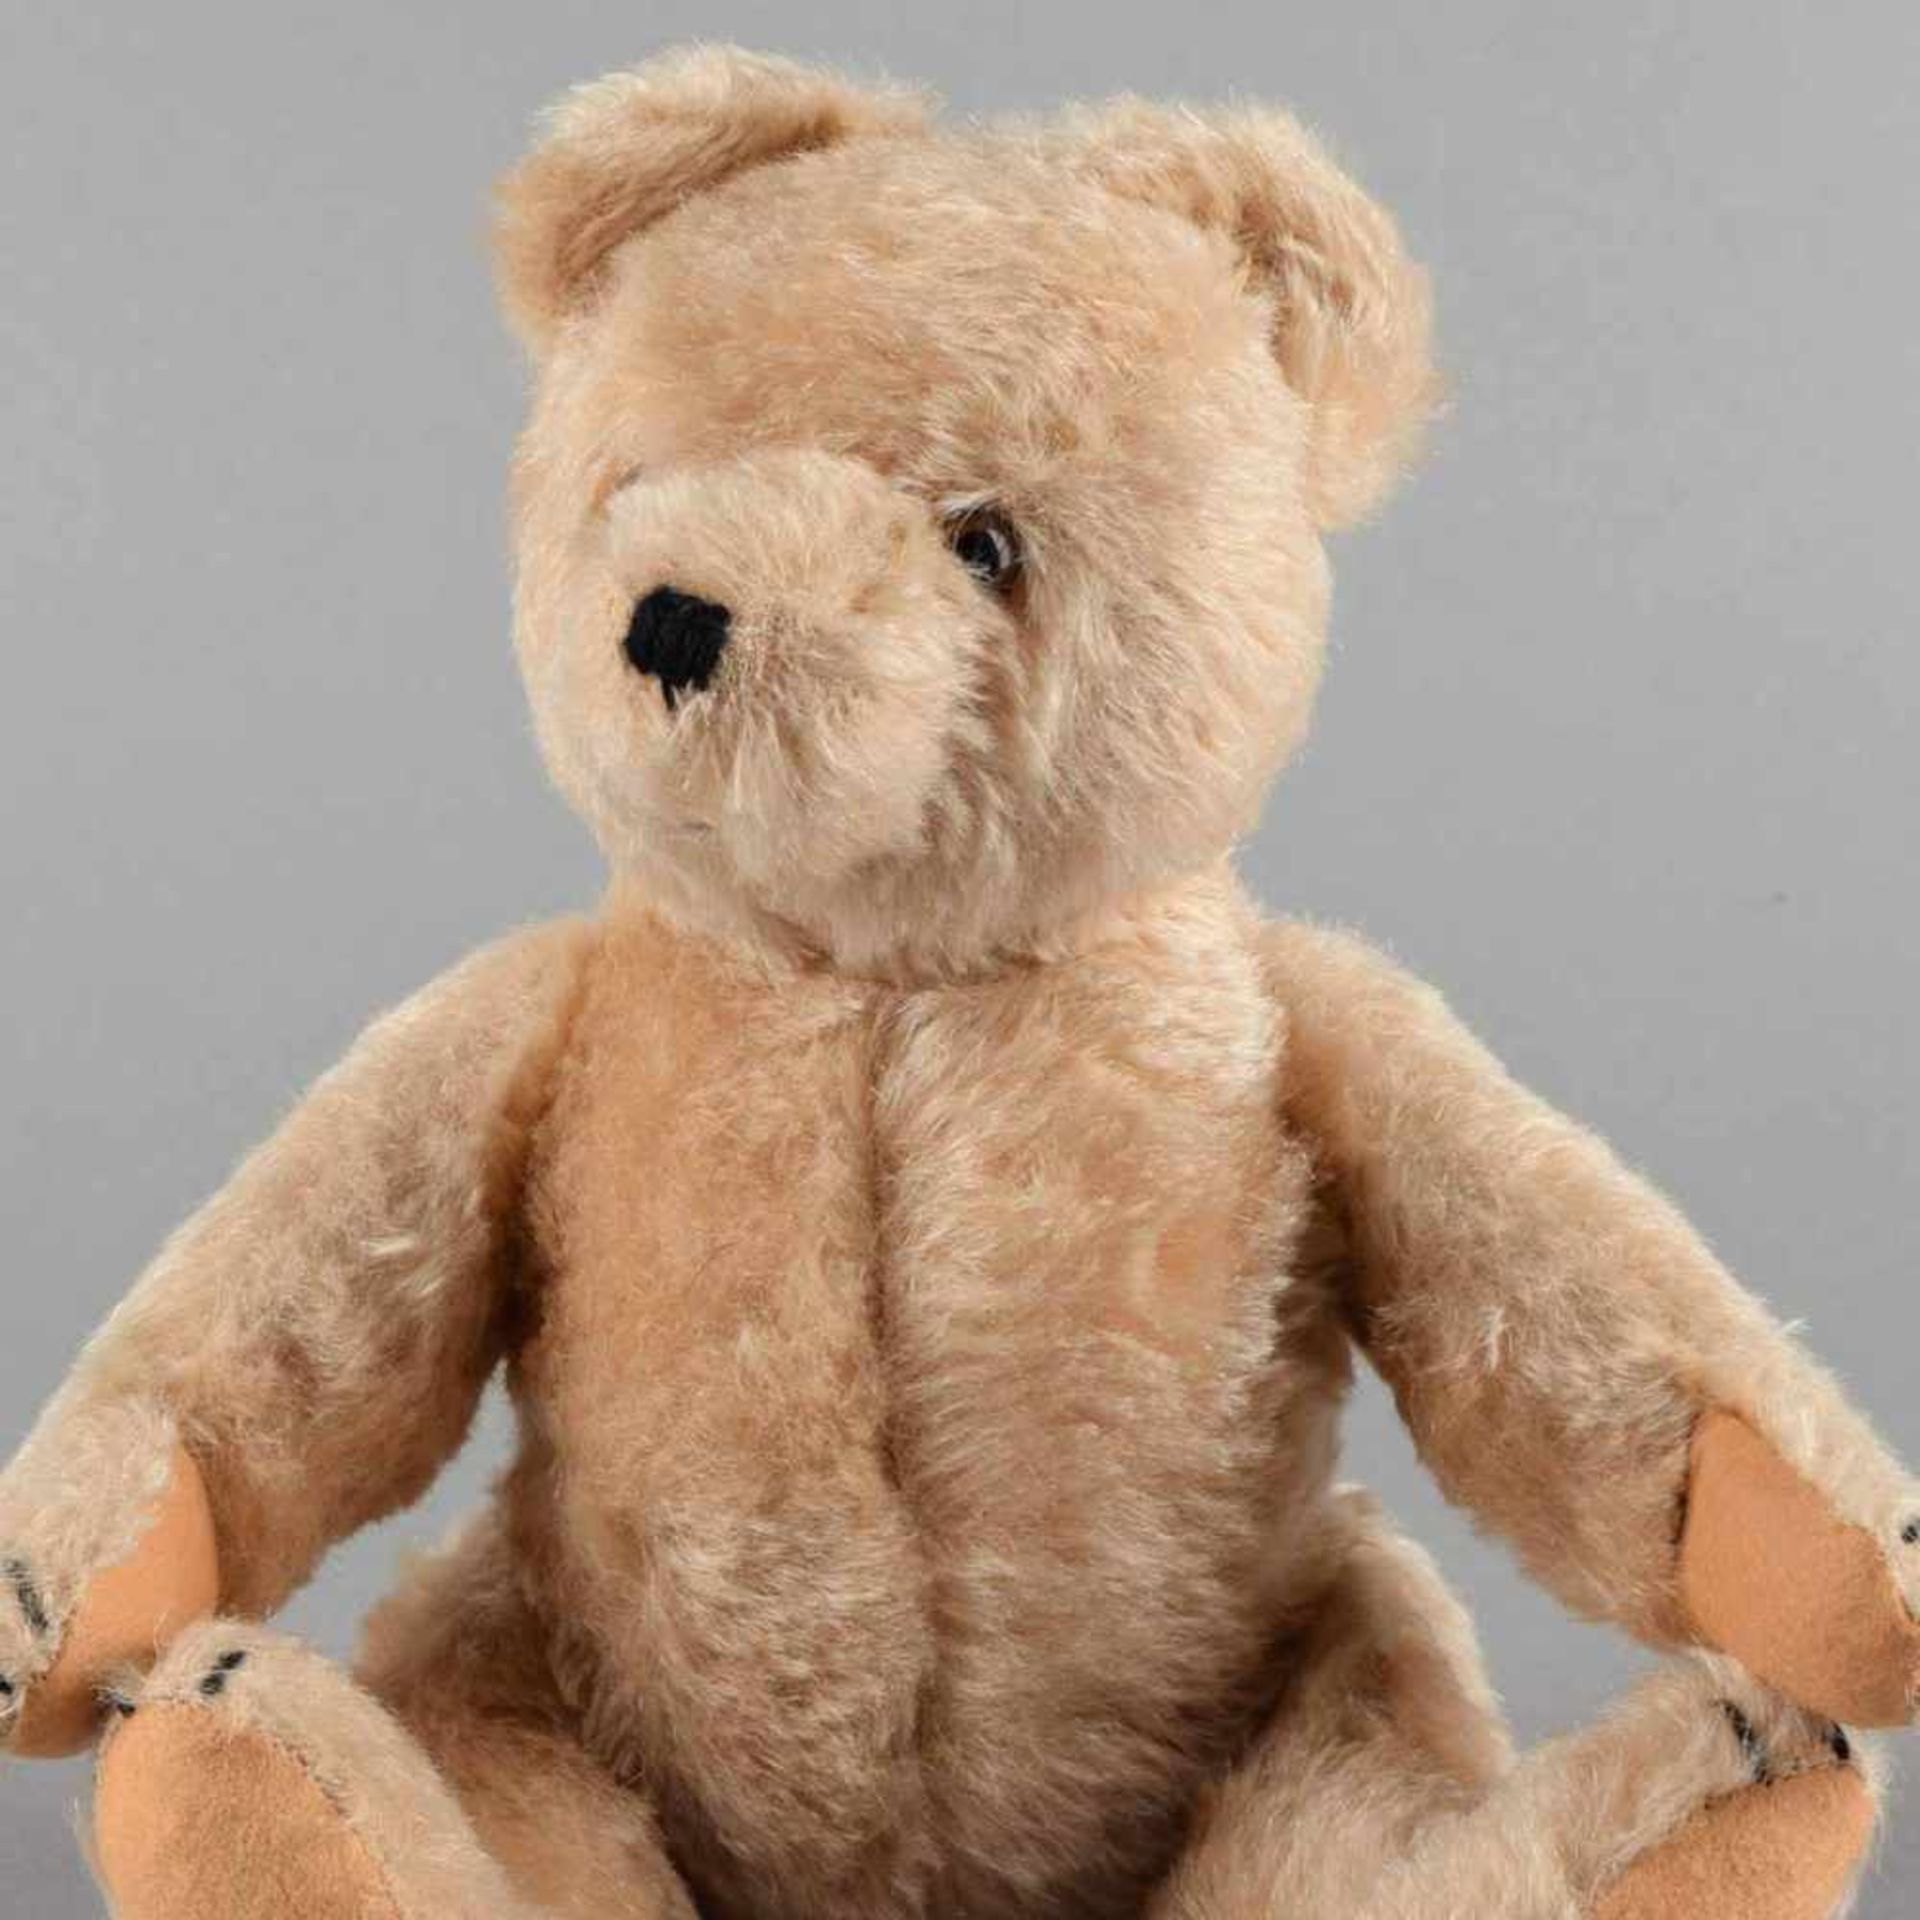 Teddybär helles Mohairfell, Körper strohgefüllt, bewegliche Glieder, Glasaugen, Schnauze und Krallen